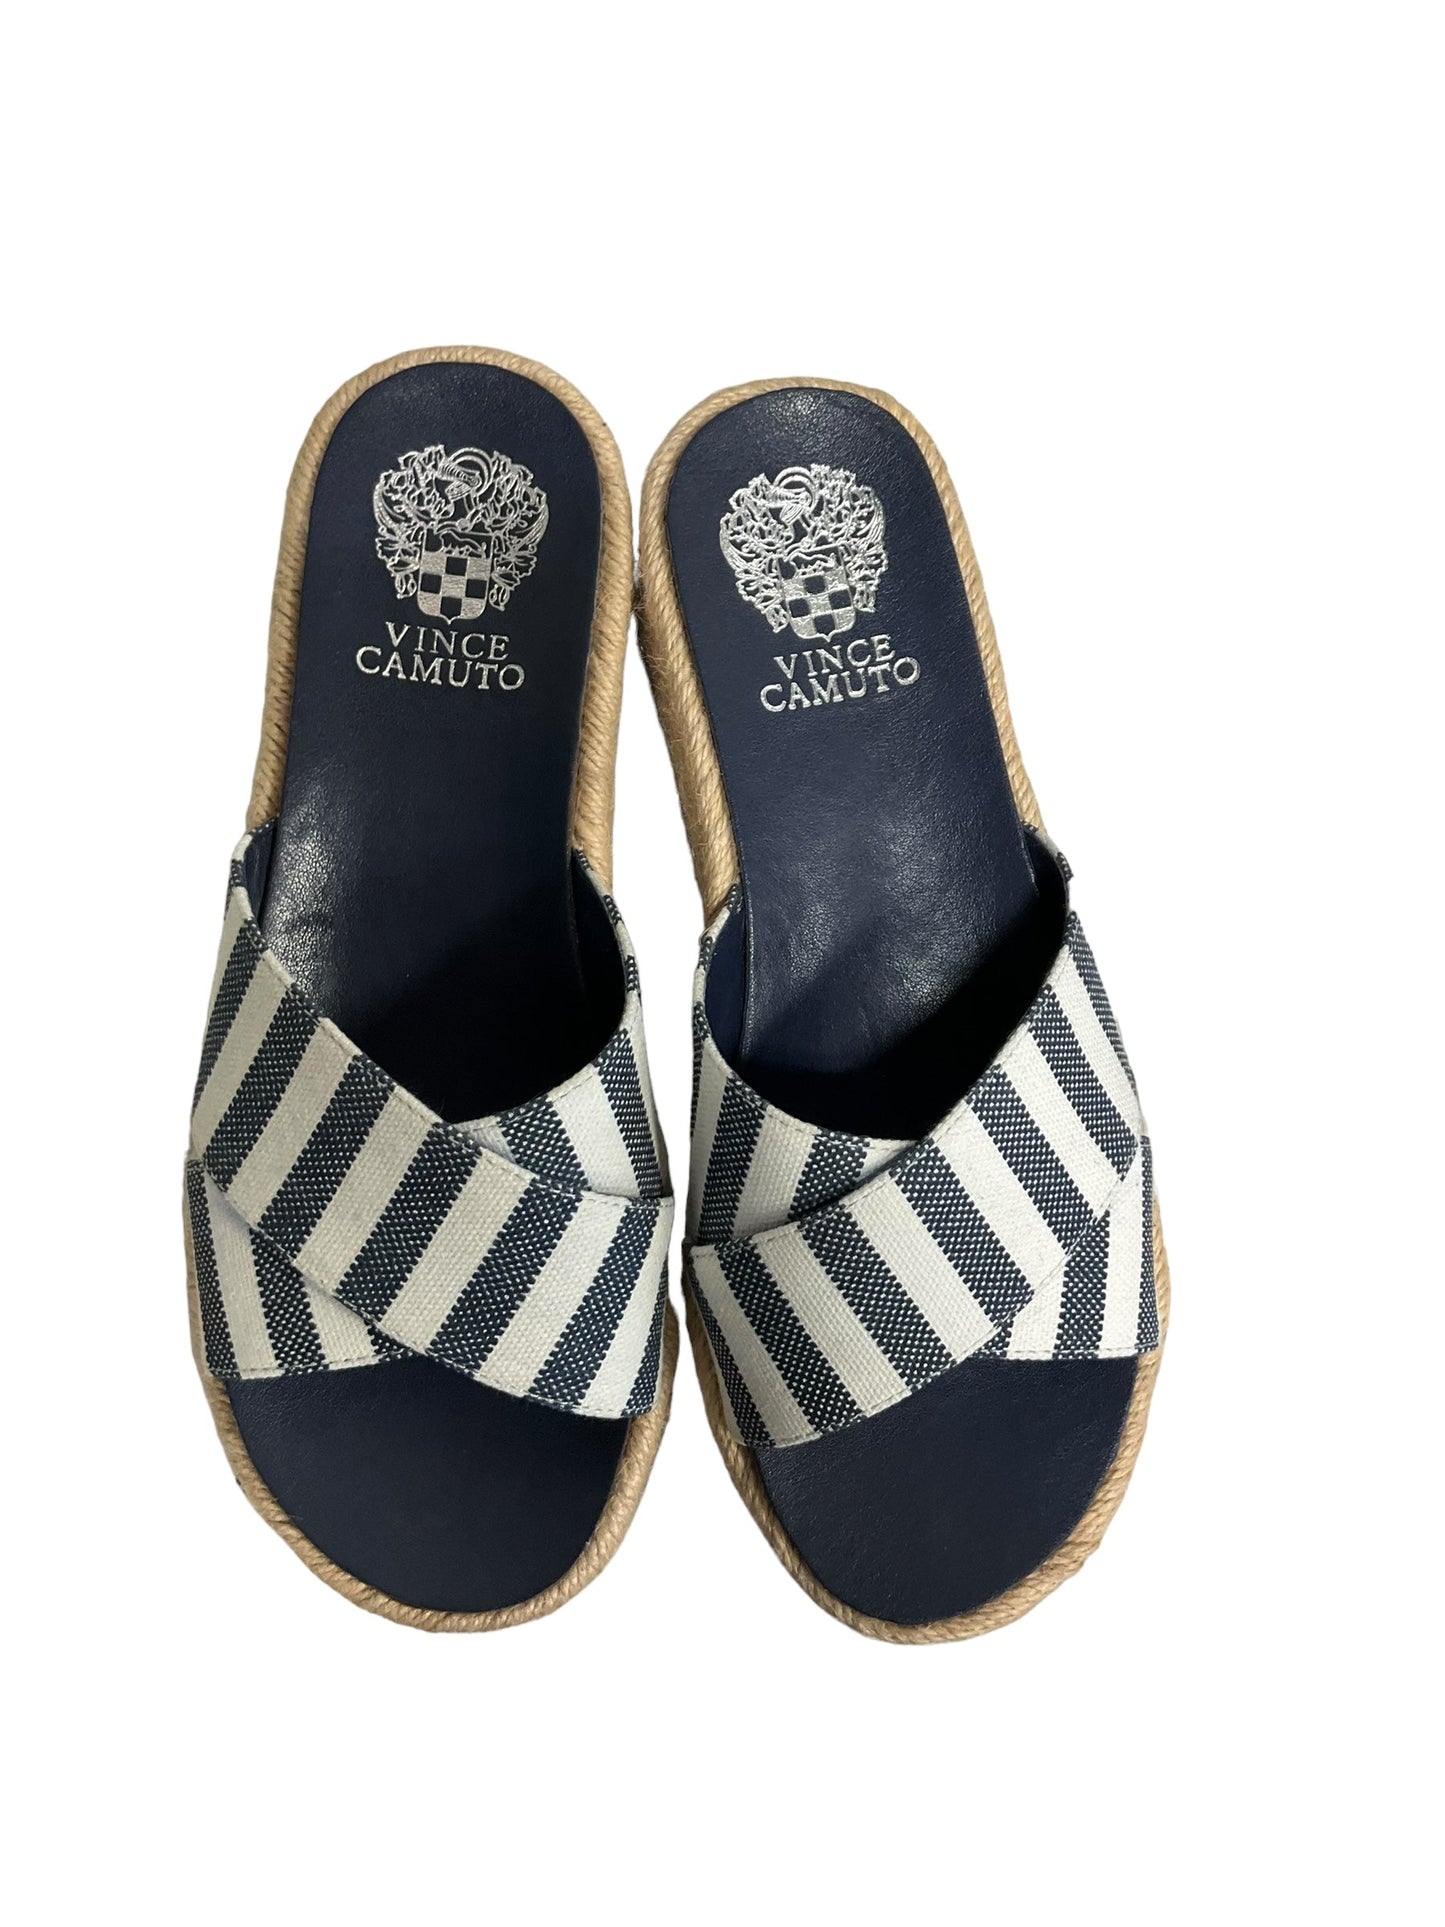 Striped Pattern Sandals Heels Platform Vince Camuto, Size 6.5